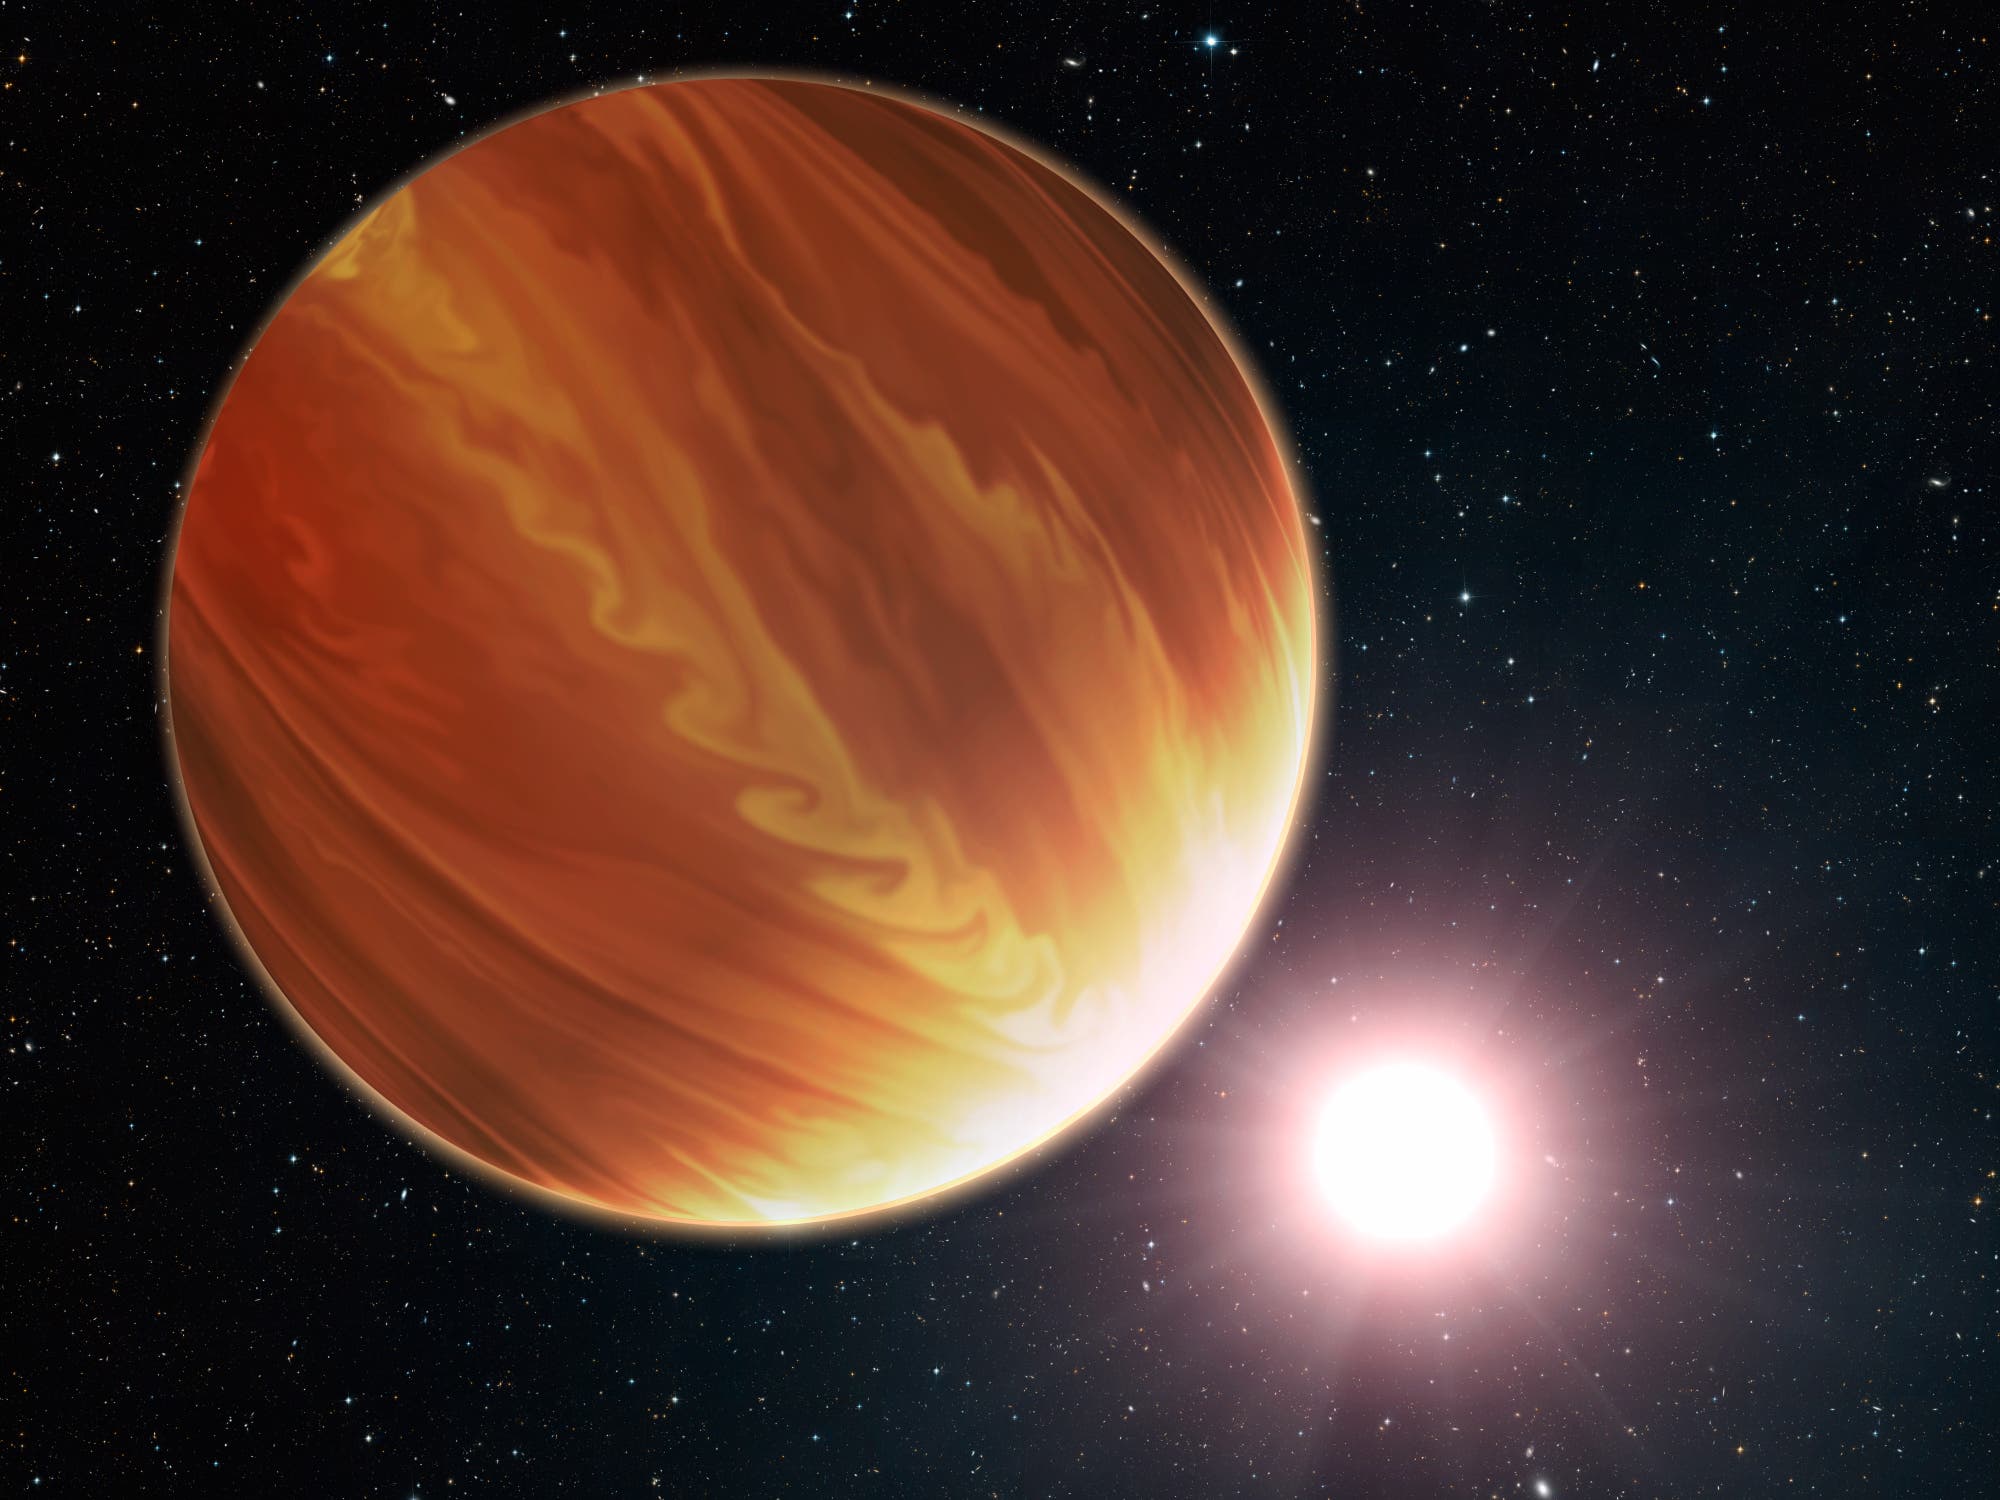 Exoplanet HD 209458b